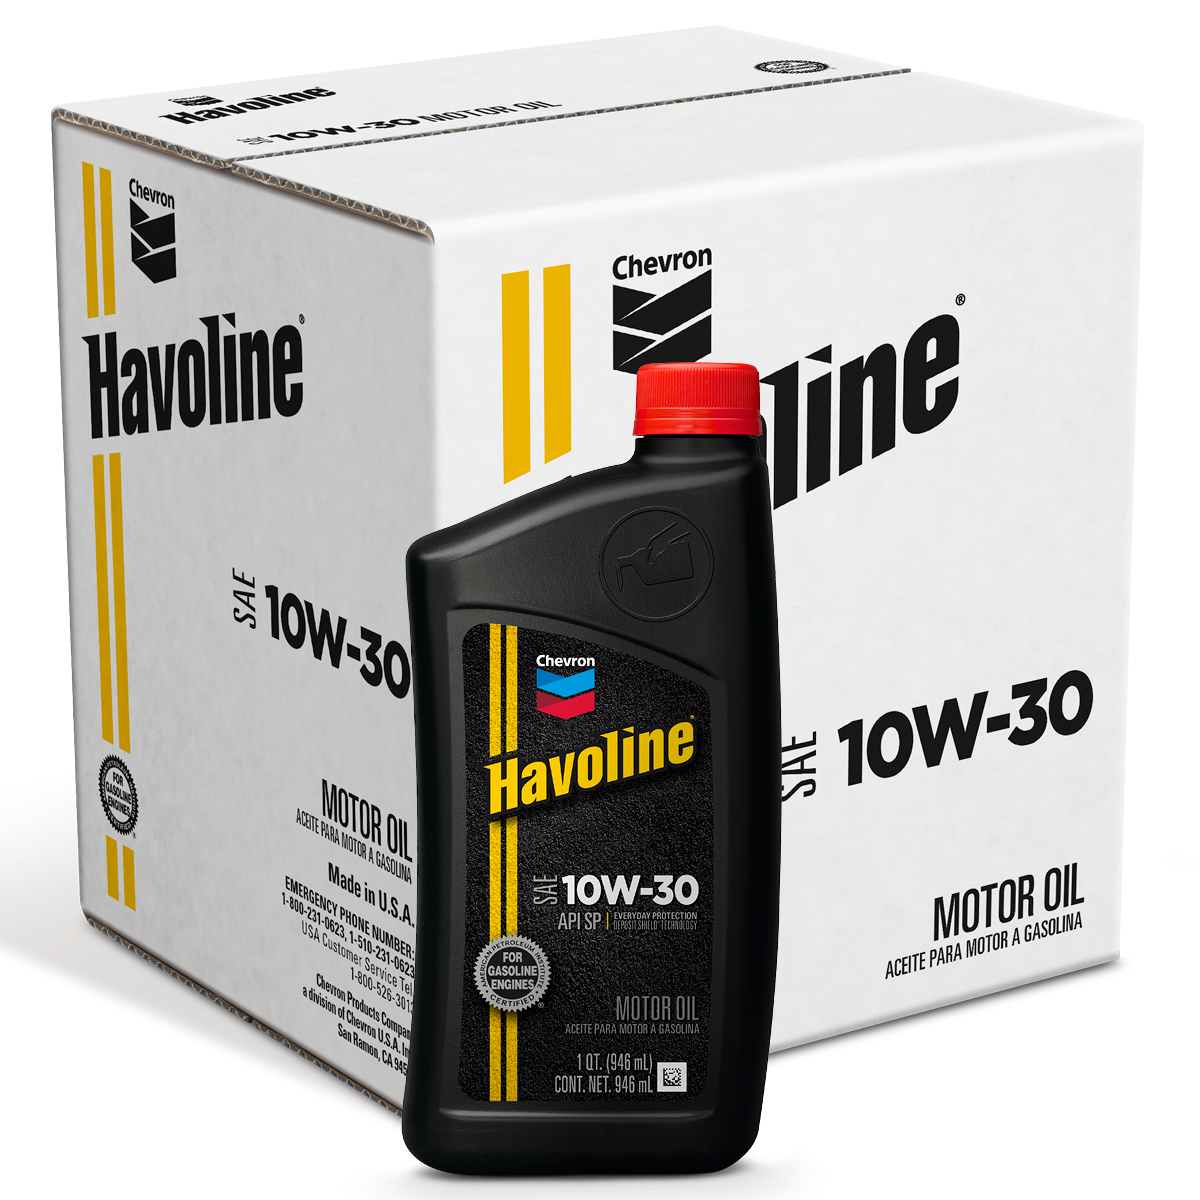 Havoline Motor Oil 10W-30 Quart Case